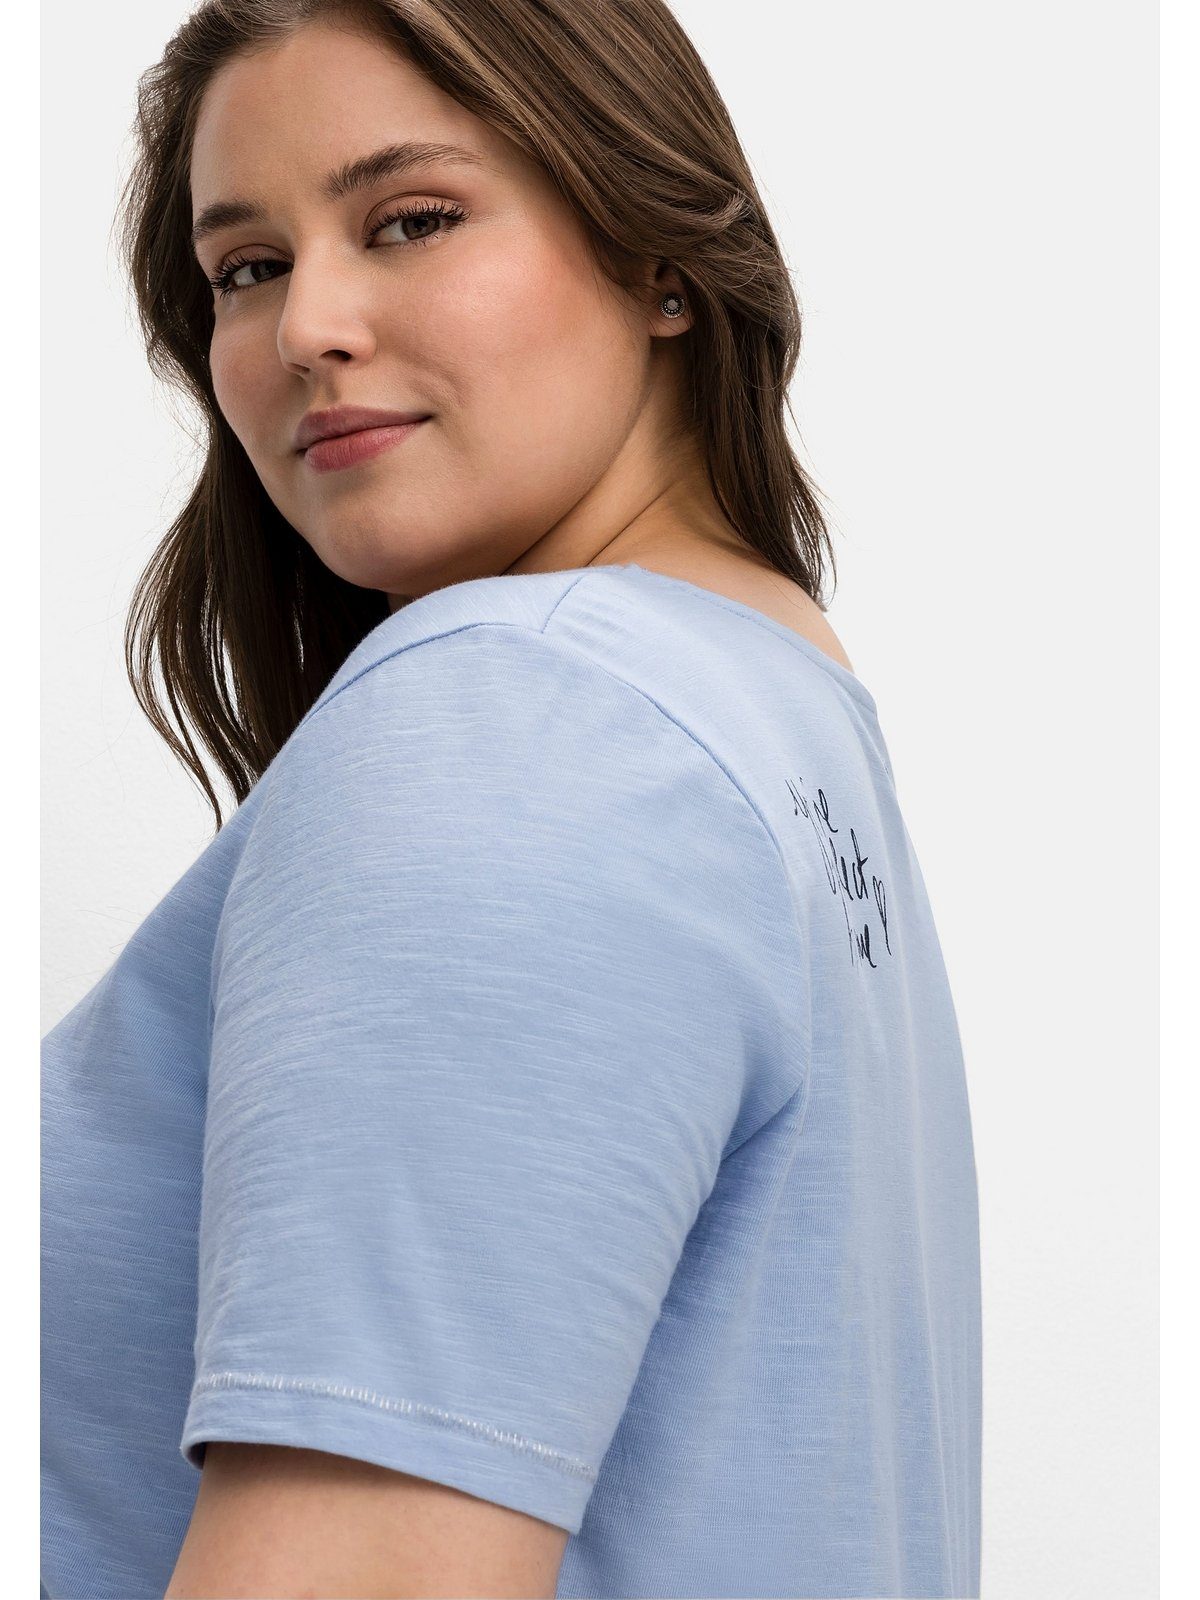 auf der mittelblau T-Shirt Große hinten Sheego Print mit Schulter Größen